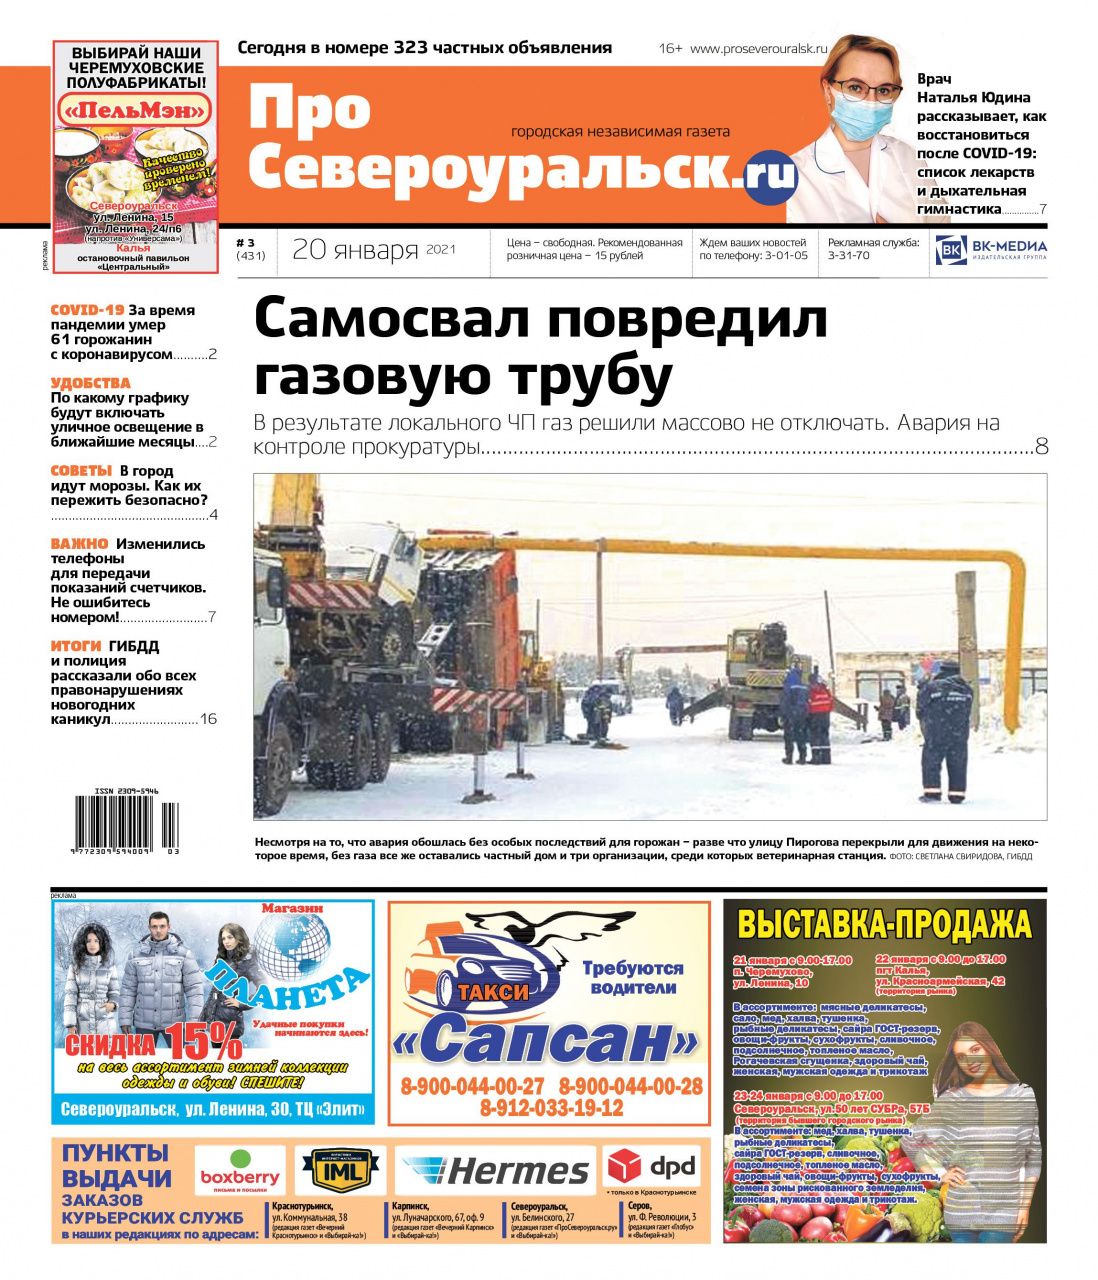 О поврежденной газовой трубе, последствиях ковида, о погоде января и о многом другом - в свежем, третьем номере газеты “ПроСевероуральск.ru”